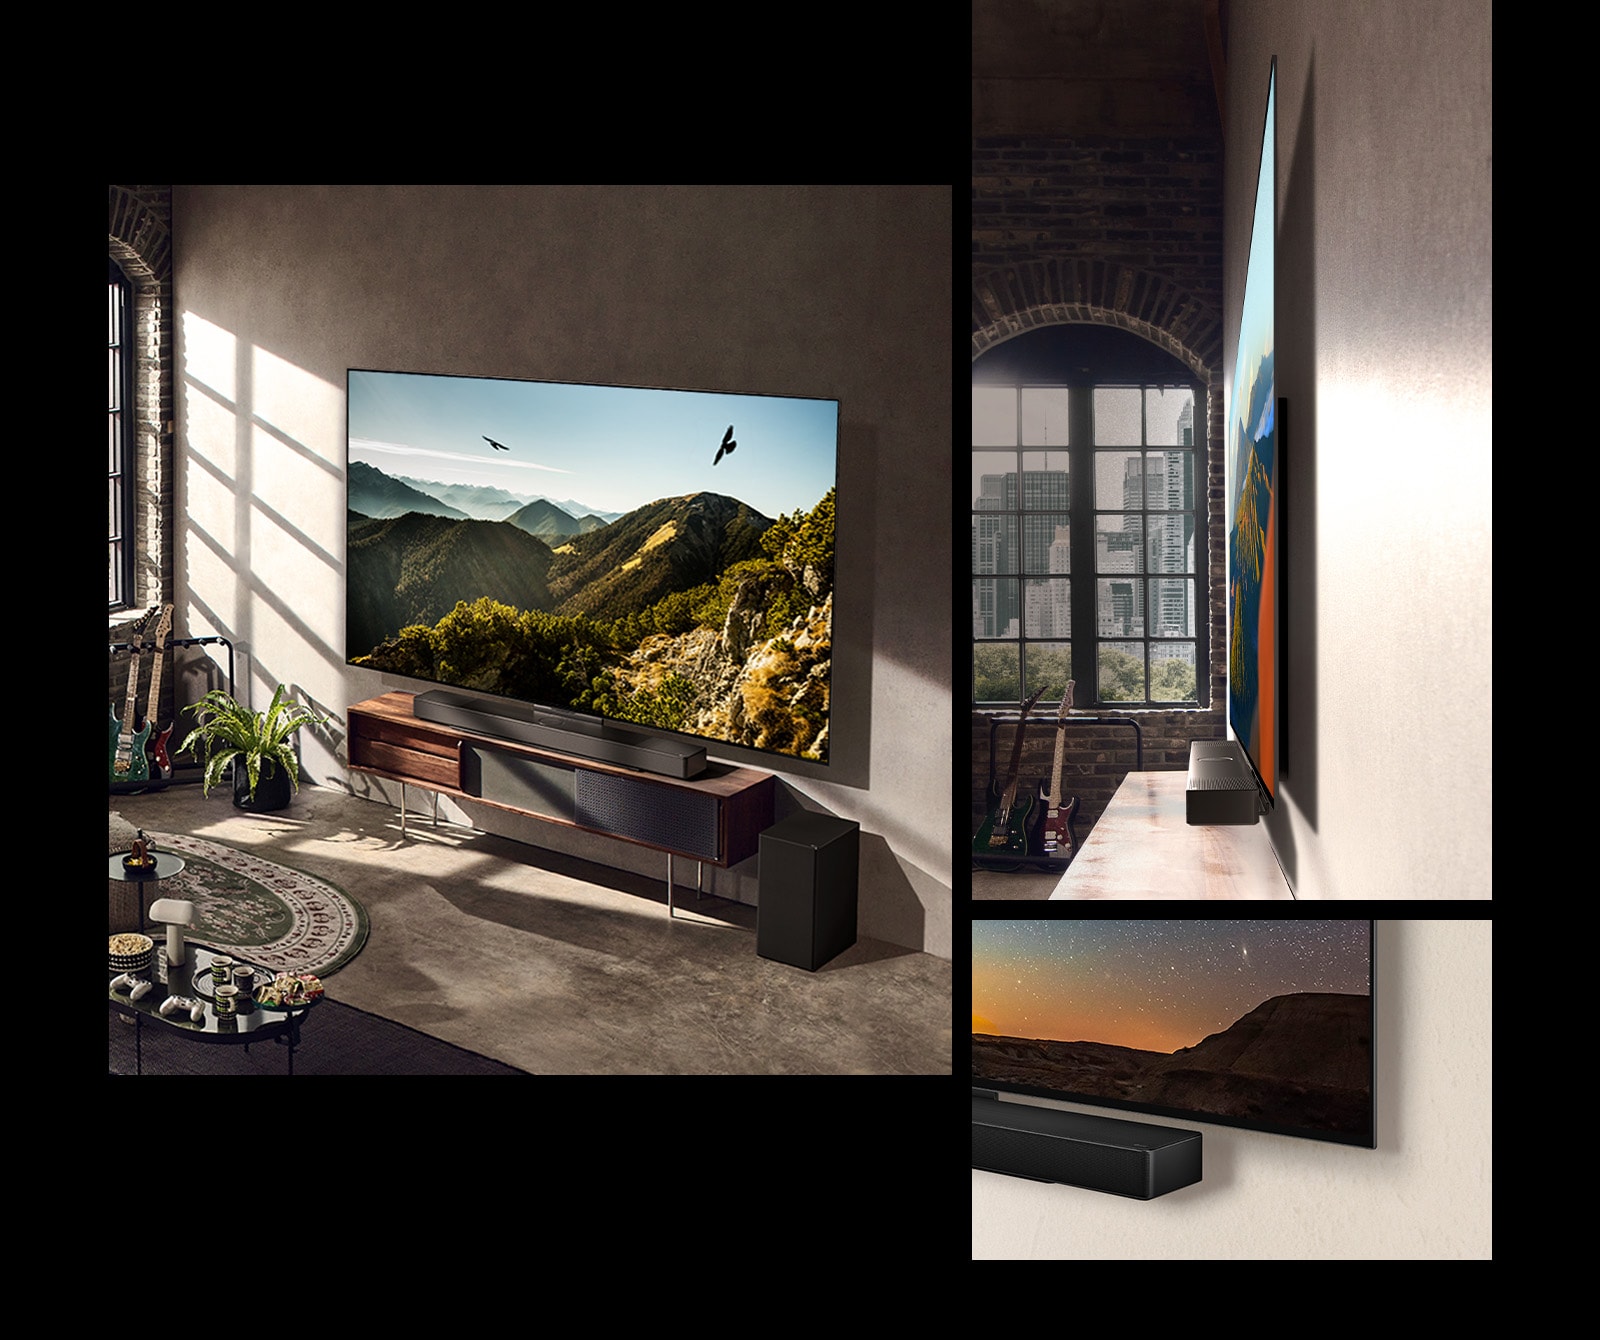 Pogled na LG OLED C3 z vodoravnim zvočnikom, ki visi na steni umetniške sobe.  Pogled na tanek LG OLED C3 pred oknom s pogledom na mesto.  LG OLED C3 spodnji kot in vodoravni pogled zvočnika.